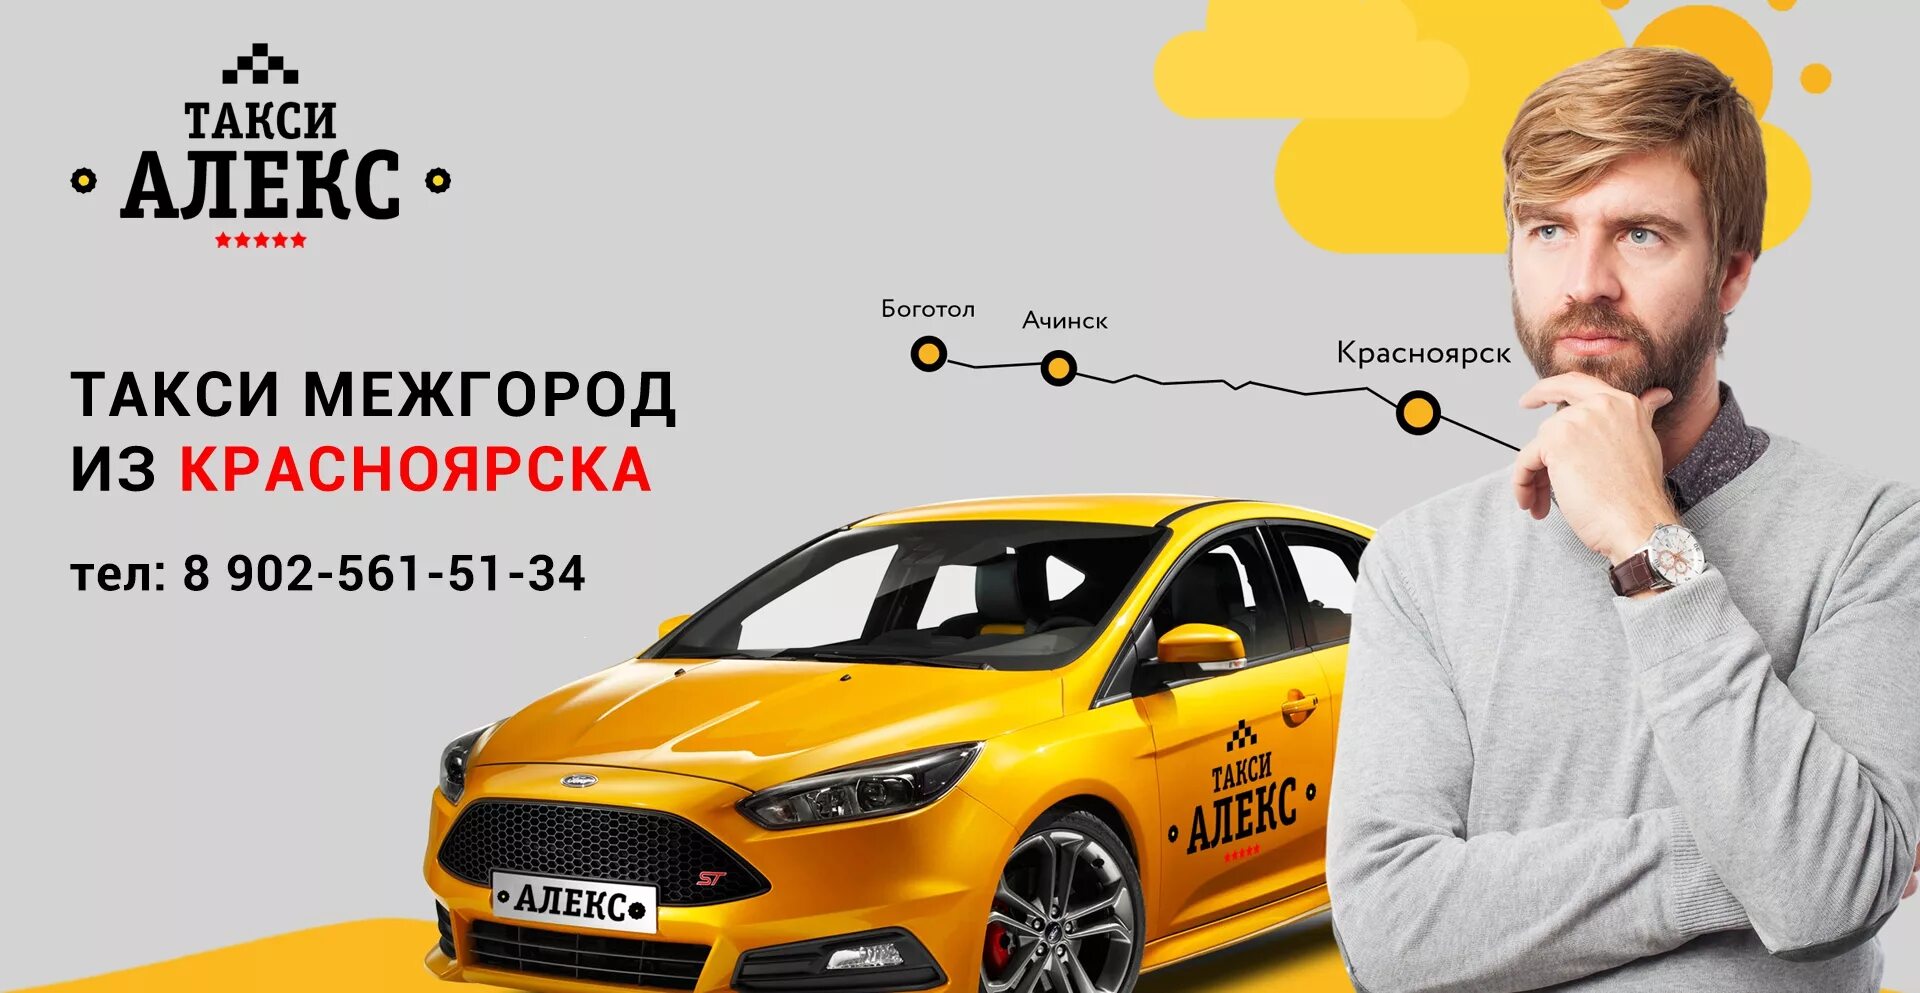 Телефоны такси города красноярска. Междугороднее такси. Такси межгород. Междугороднее такси Красноярск. Такси Алекс.